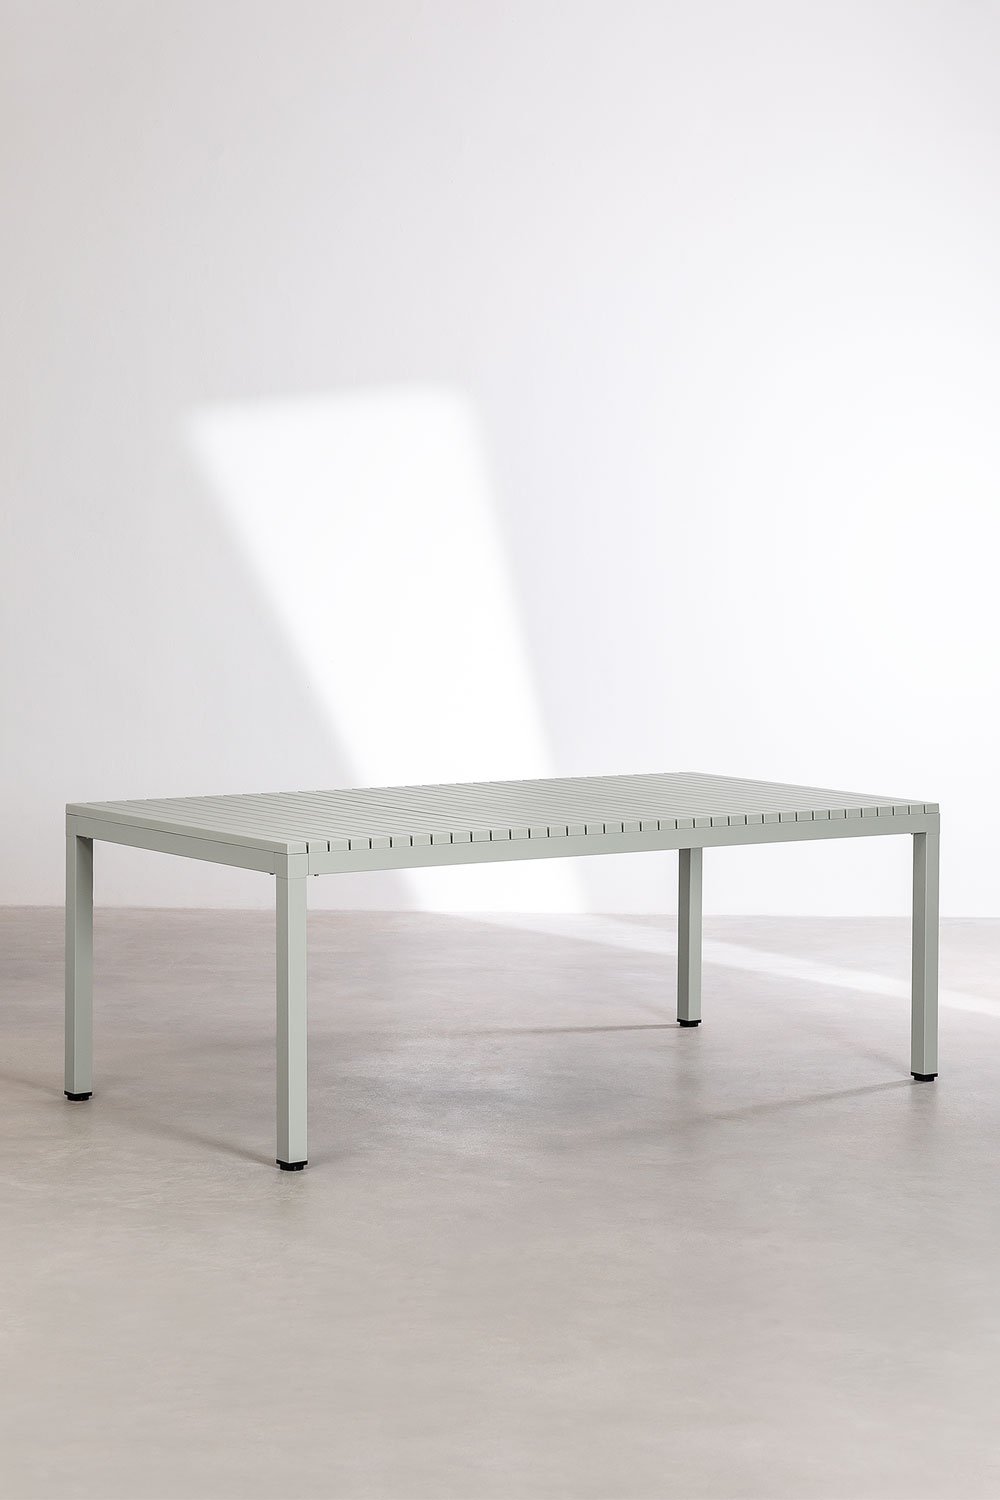 Tavolo da giardino rettangolare in alluminio (210x100 cm) Marti, immagine della galleria 1